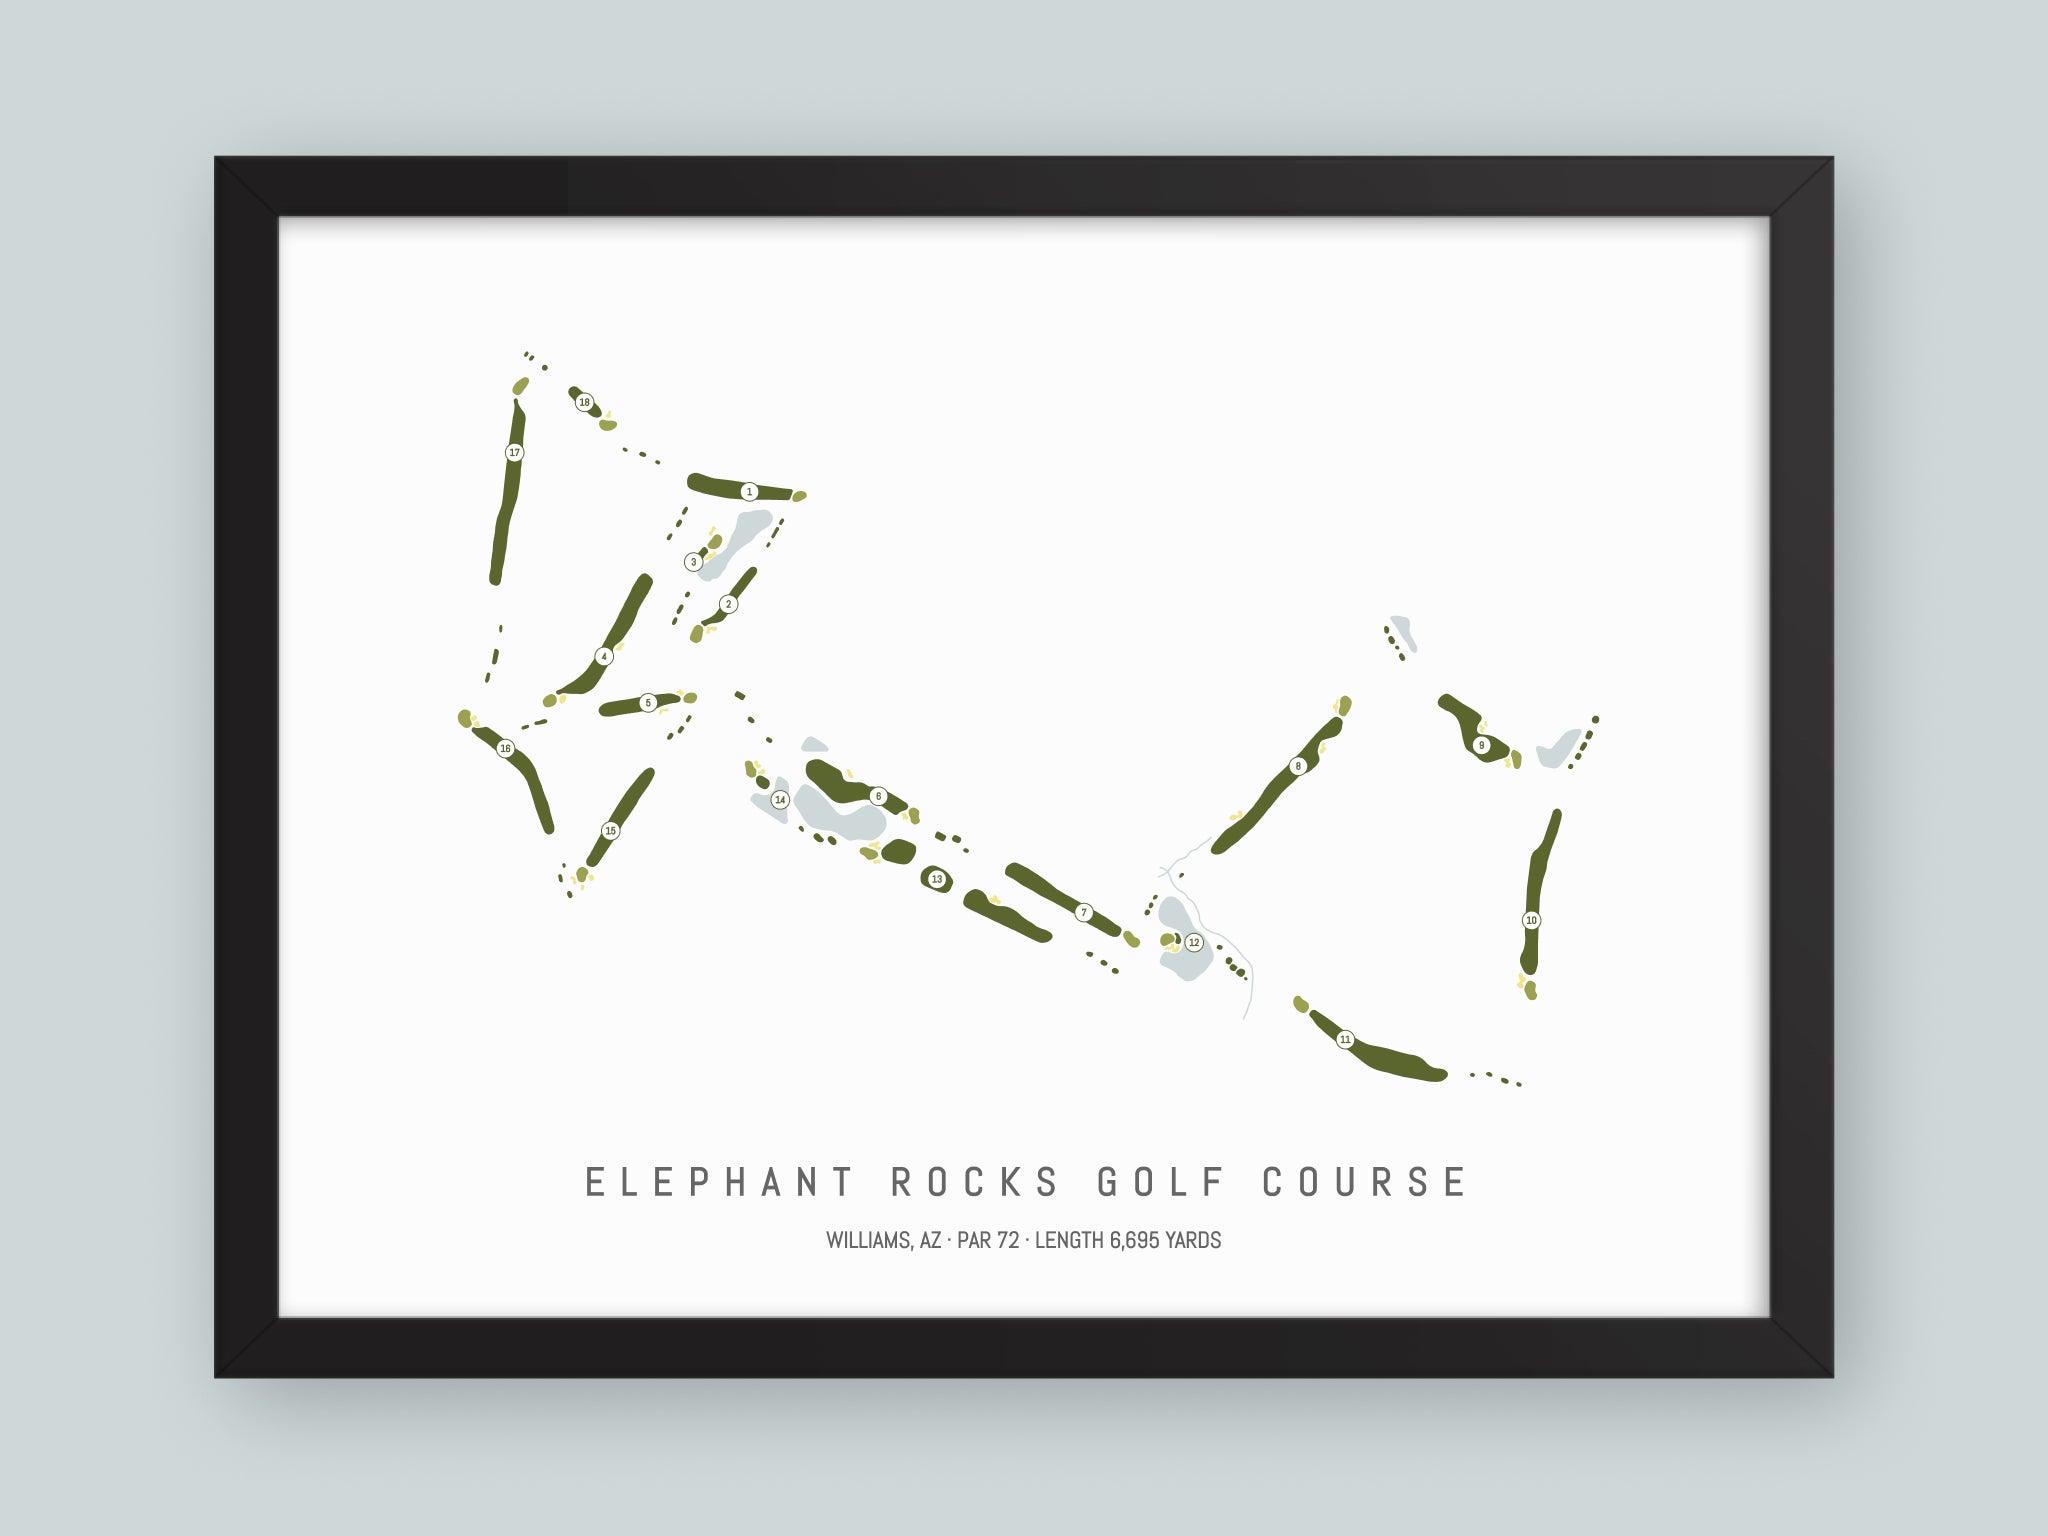 Elephant-Rocks-Golf-Course-AZ--Black-Frame-24x18-With-Hole-Numbers